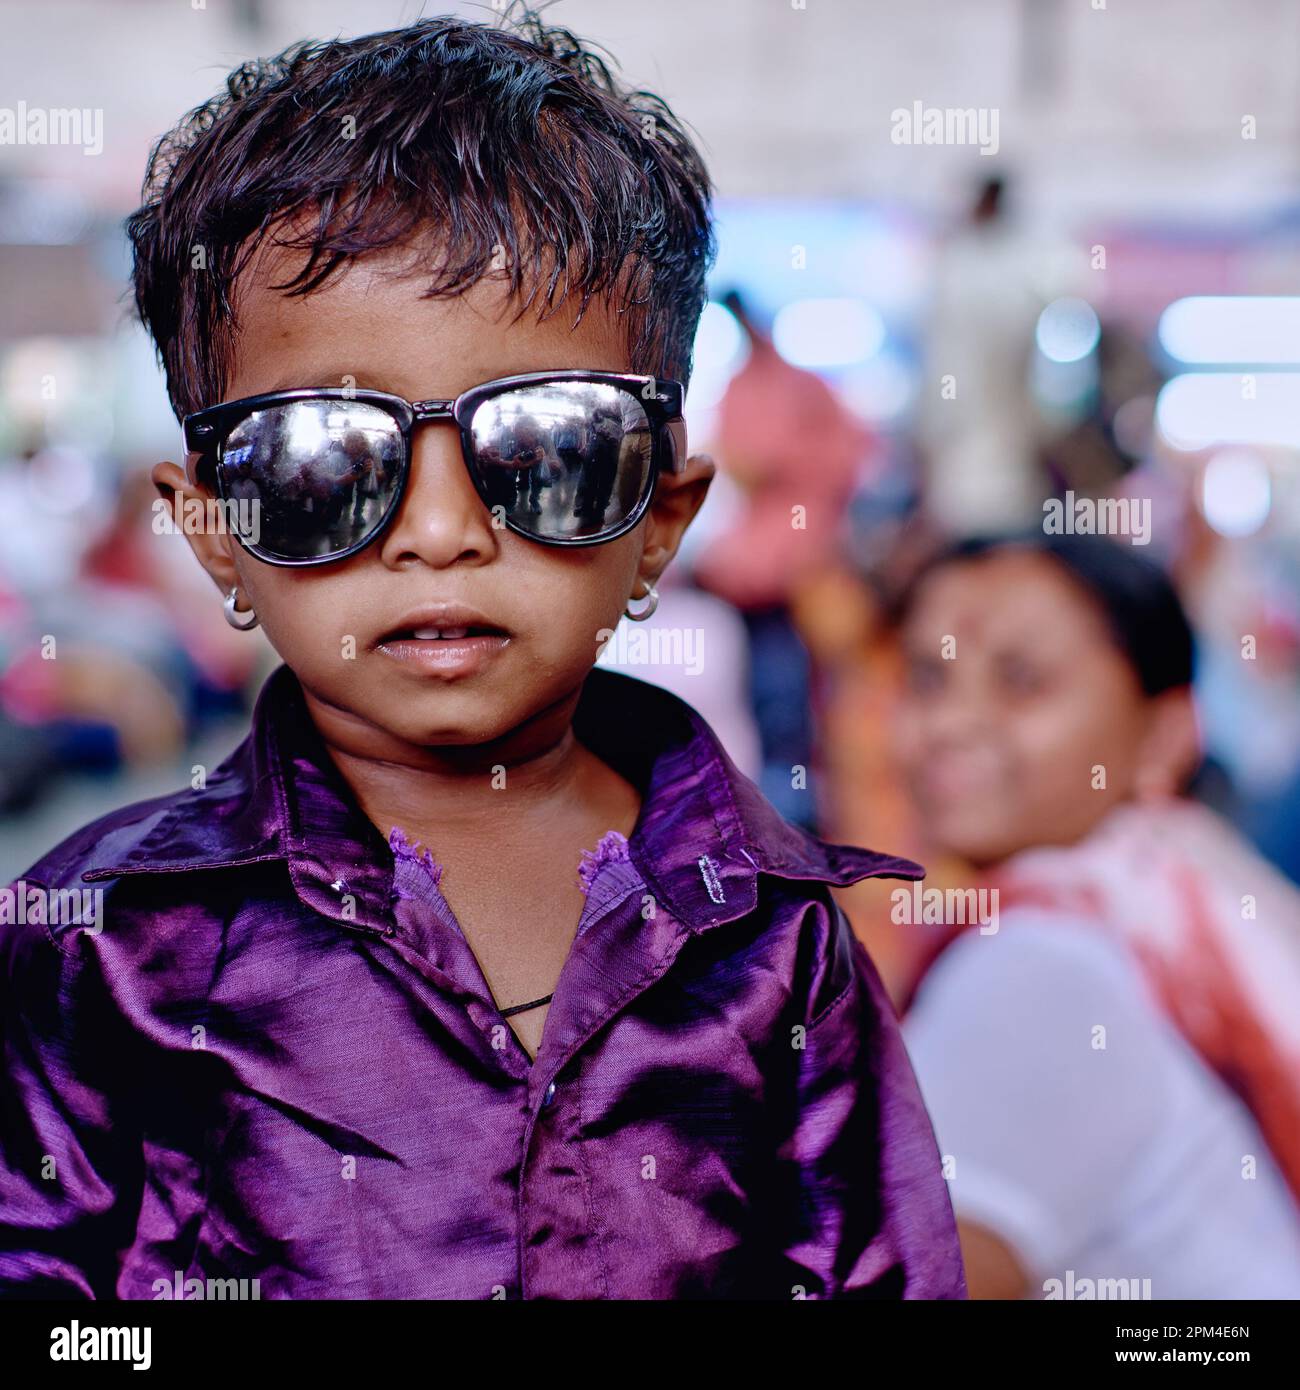 Un garçon indien de maternelle portant des lunettes de soleil ainsi que des boucles d'oreilles, apparemment habillé le long des lignes de célébrités de Bollywood Banque D'Images